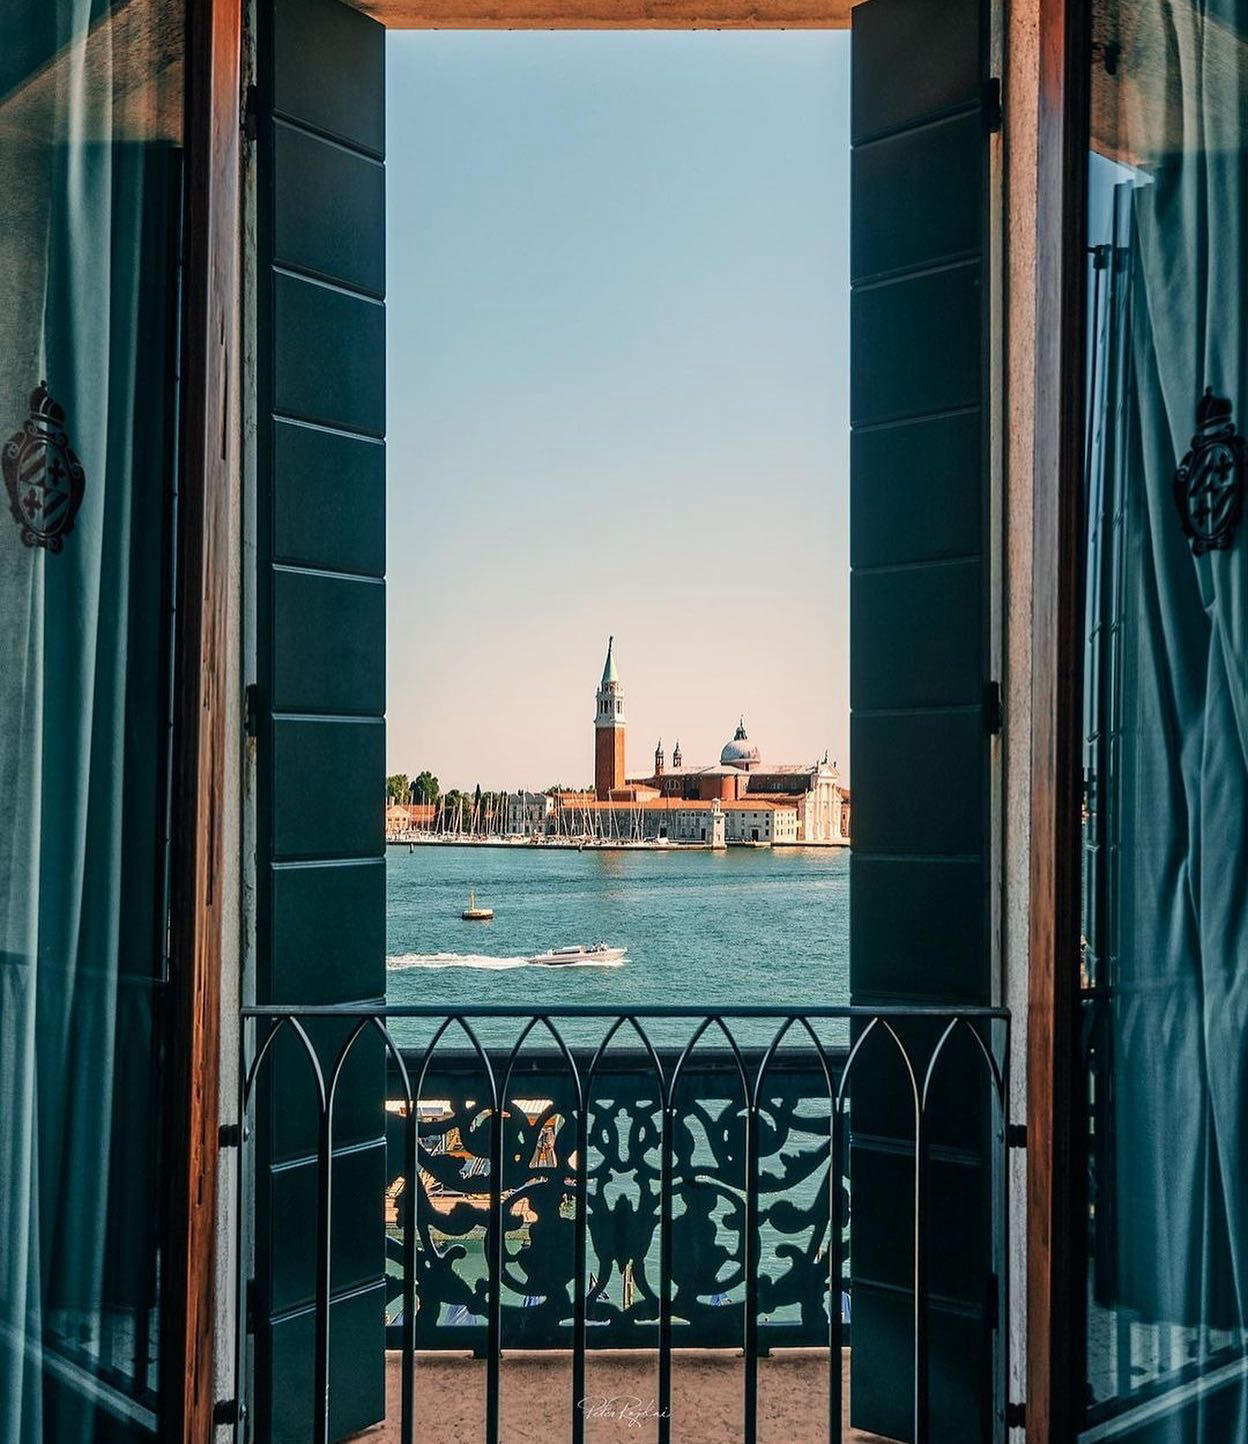 Hotel Danieli, Venice - Like a theatrical backdrop the stunning view of San Giorgio Maggiore Island